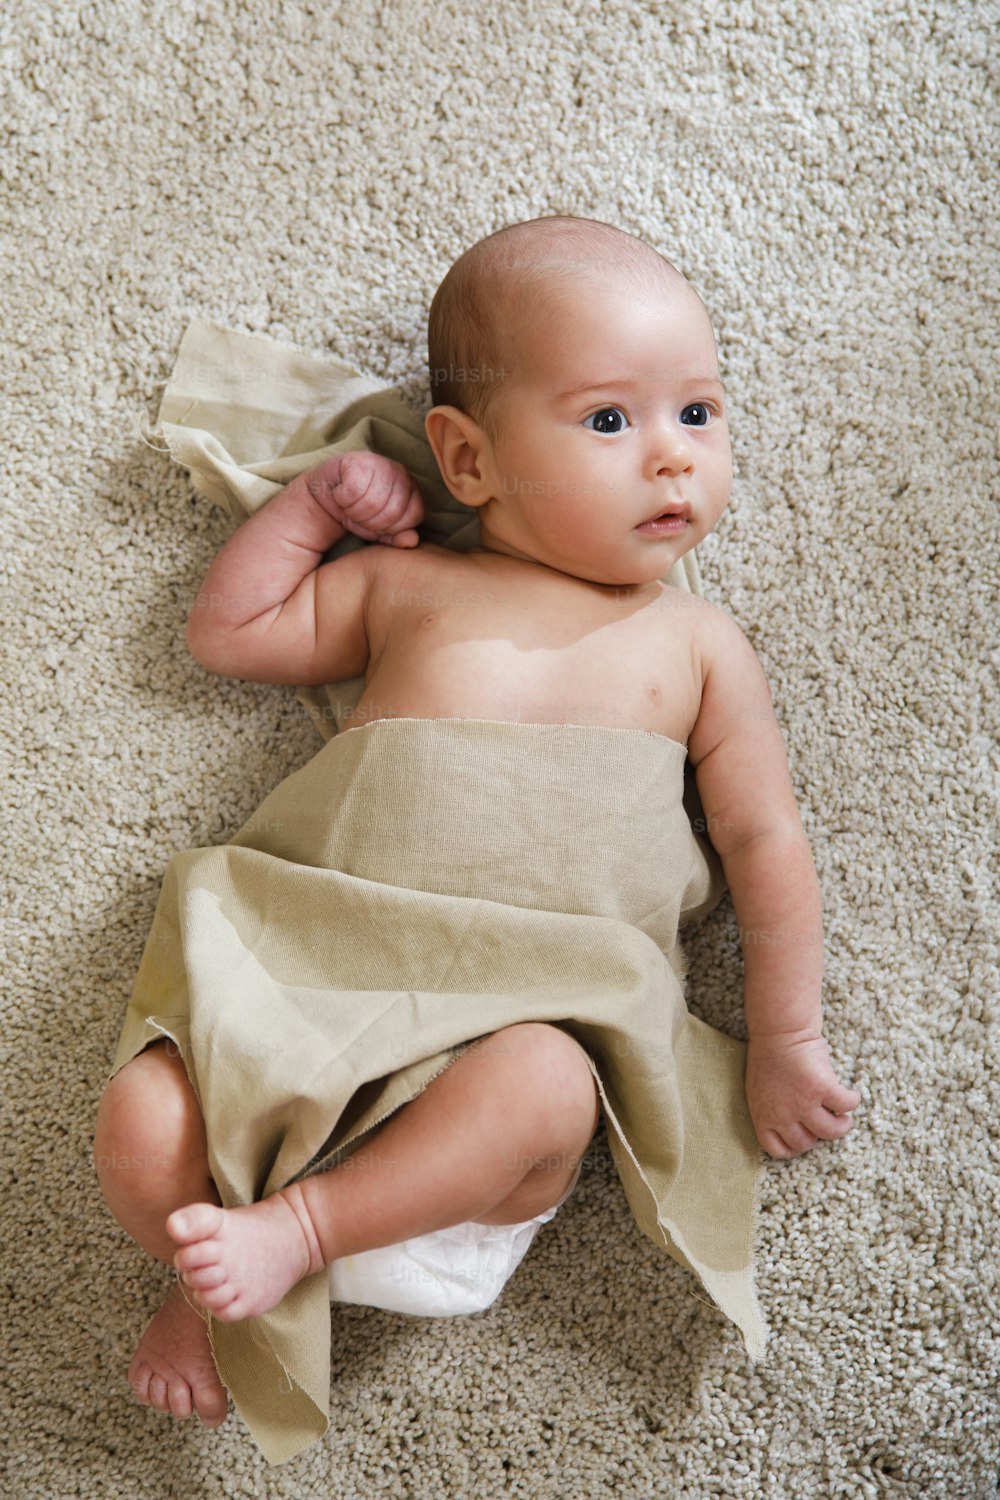 린넨 원단으로 덮인 귀여운 아기가 부드러운 카펫에 누워 있다